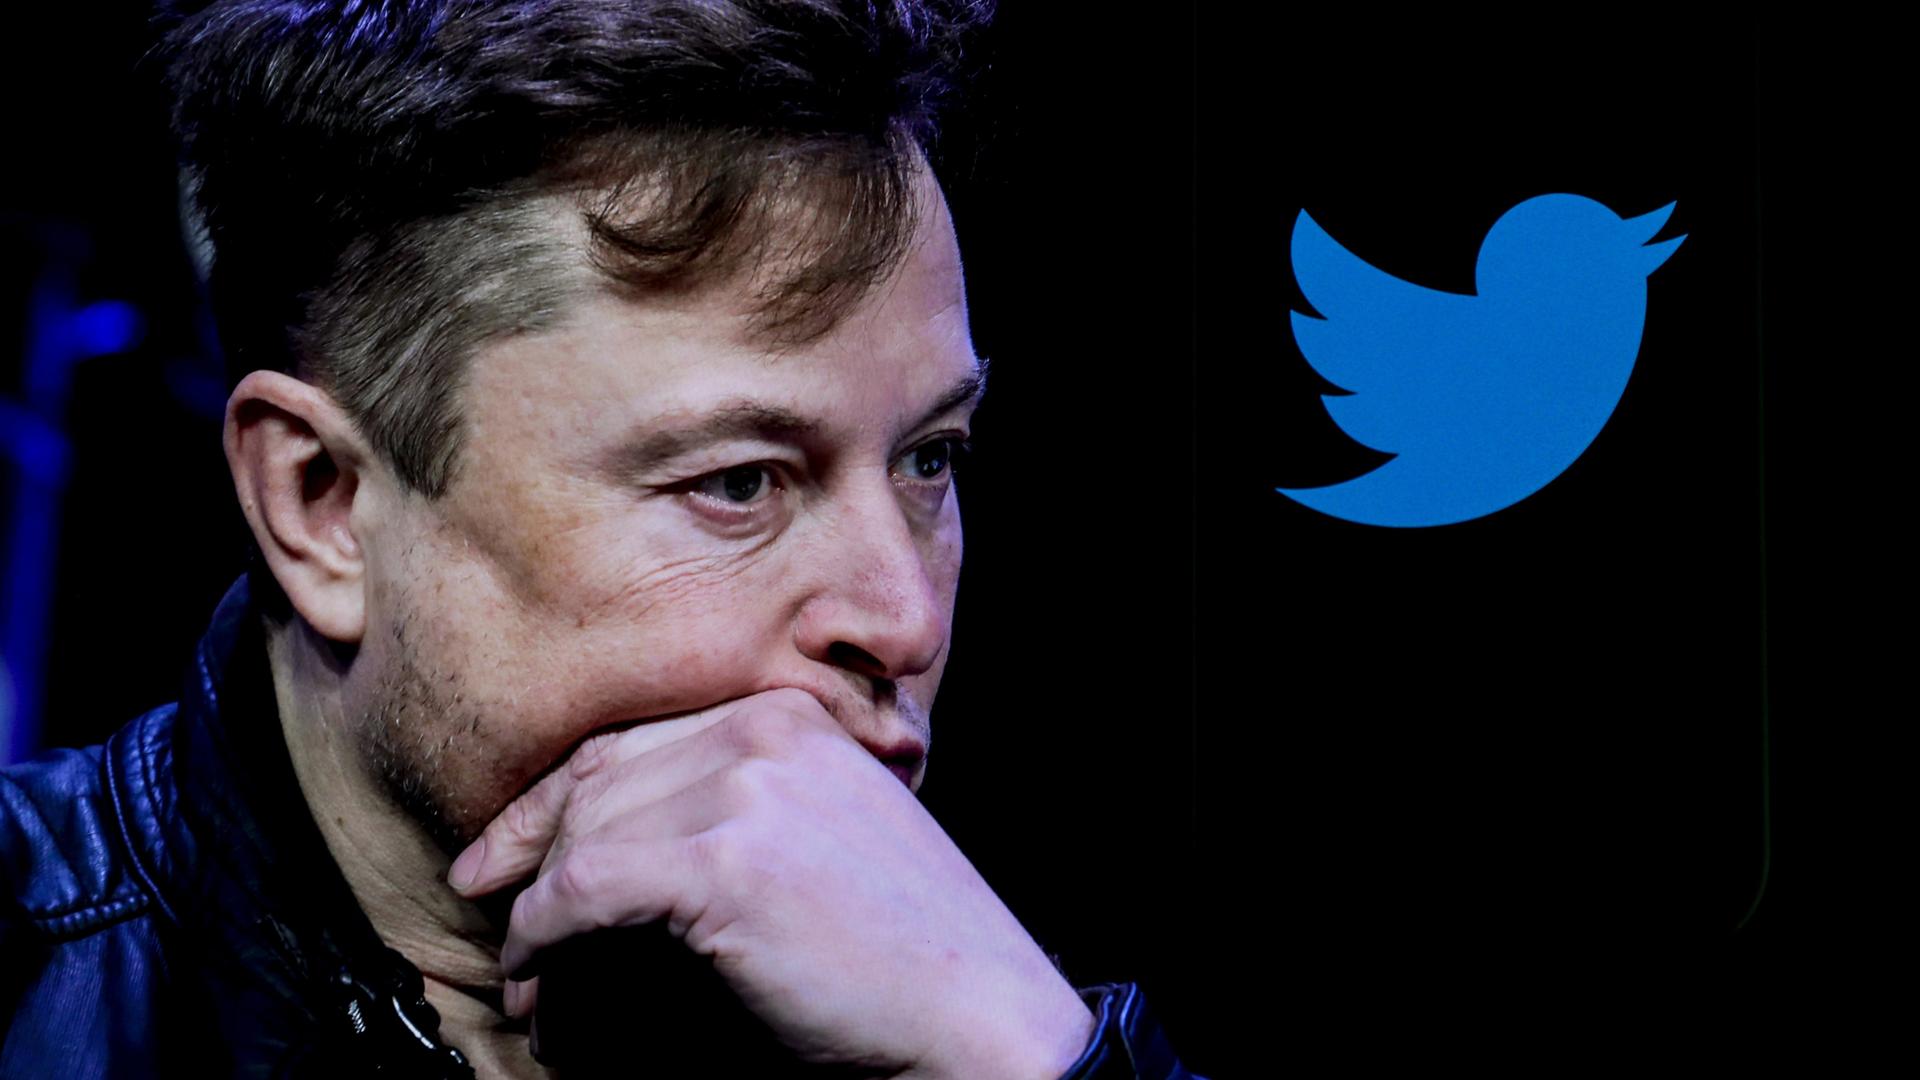 Elon Musk hält seine linke Hand nachdenklich an sein Kinn. Im Hintergrund sieht man das Twitter-Logo.